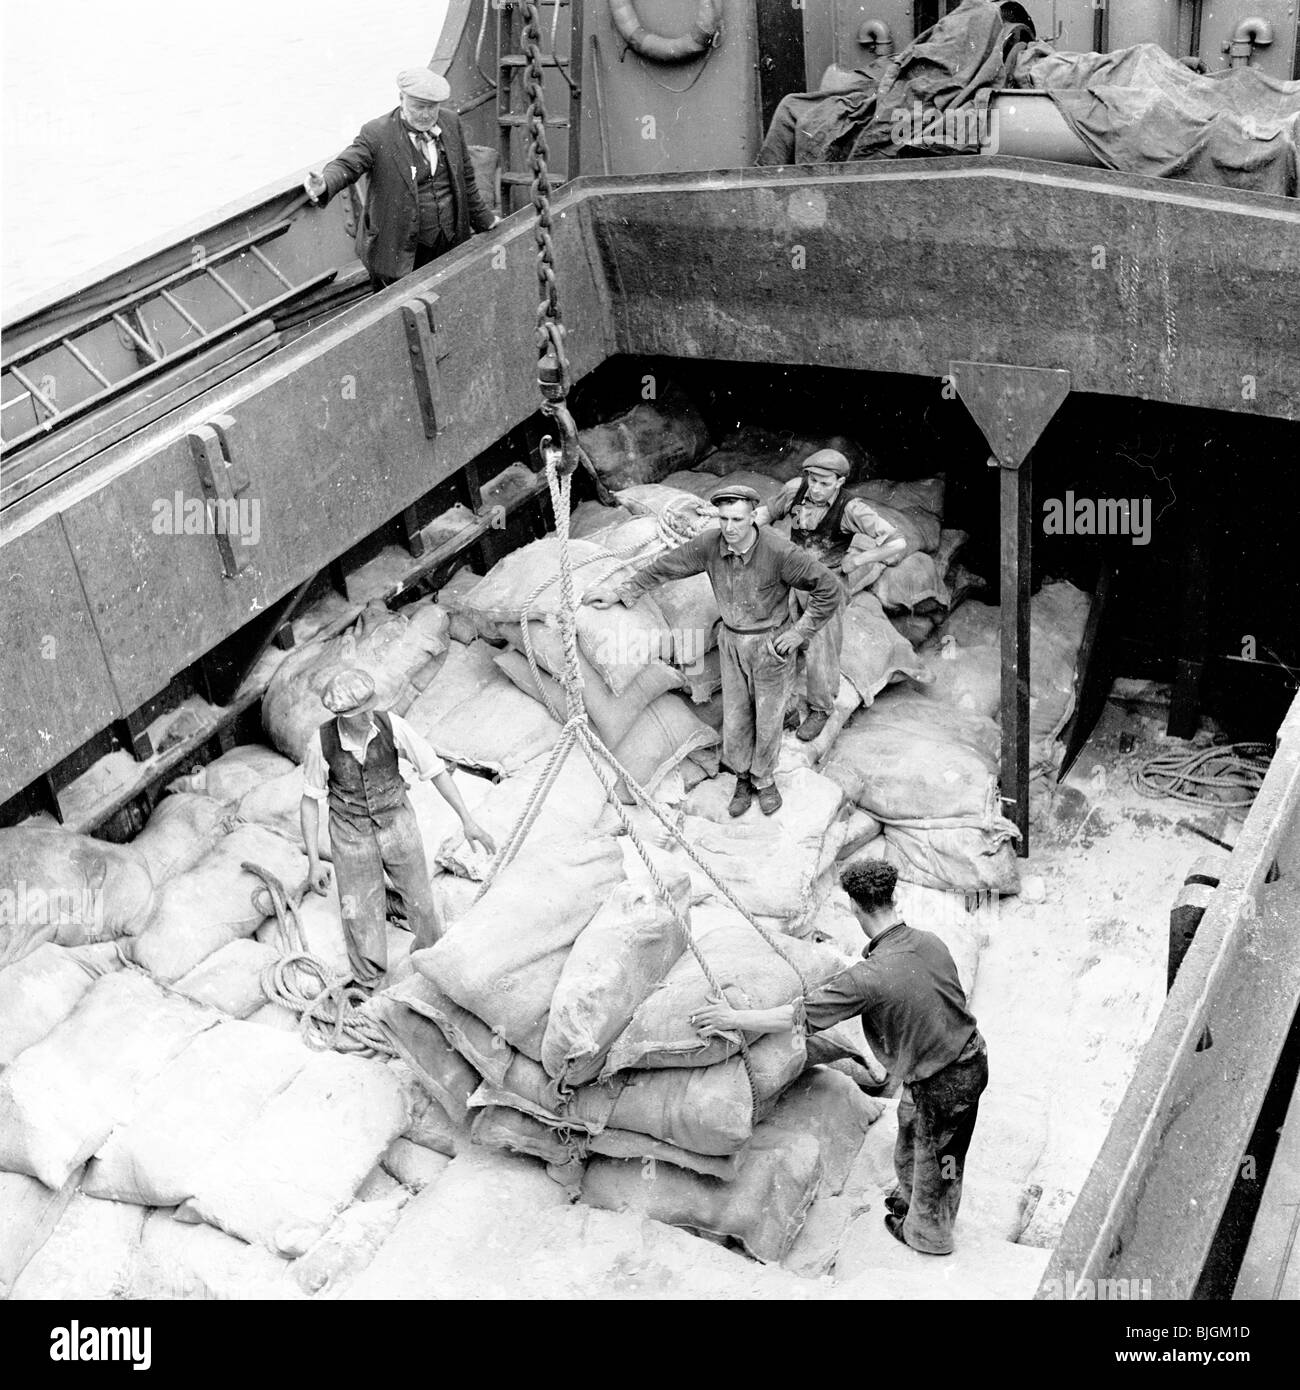 Quais de Londres, Angleterre, 1950s. Les travailleurs chargent de grands sacs de matières premières sur une poulie depuis l'intérieur de la soute d'un navire. Tous portent des casquettes en tissu, le contremaître au niveau supérieur qui supervise le travail. Banque D'Images